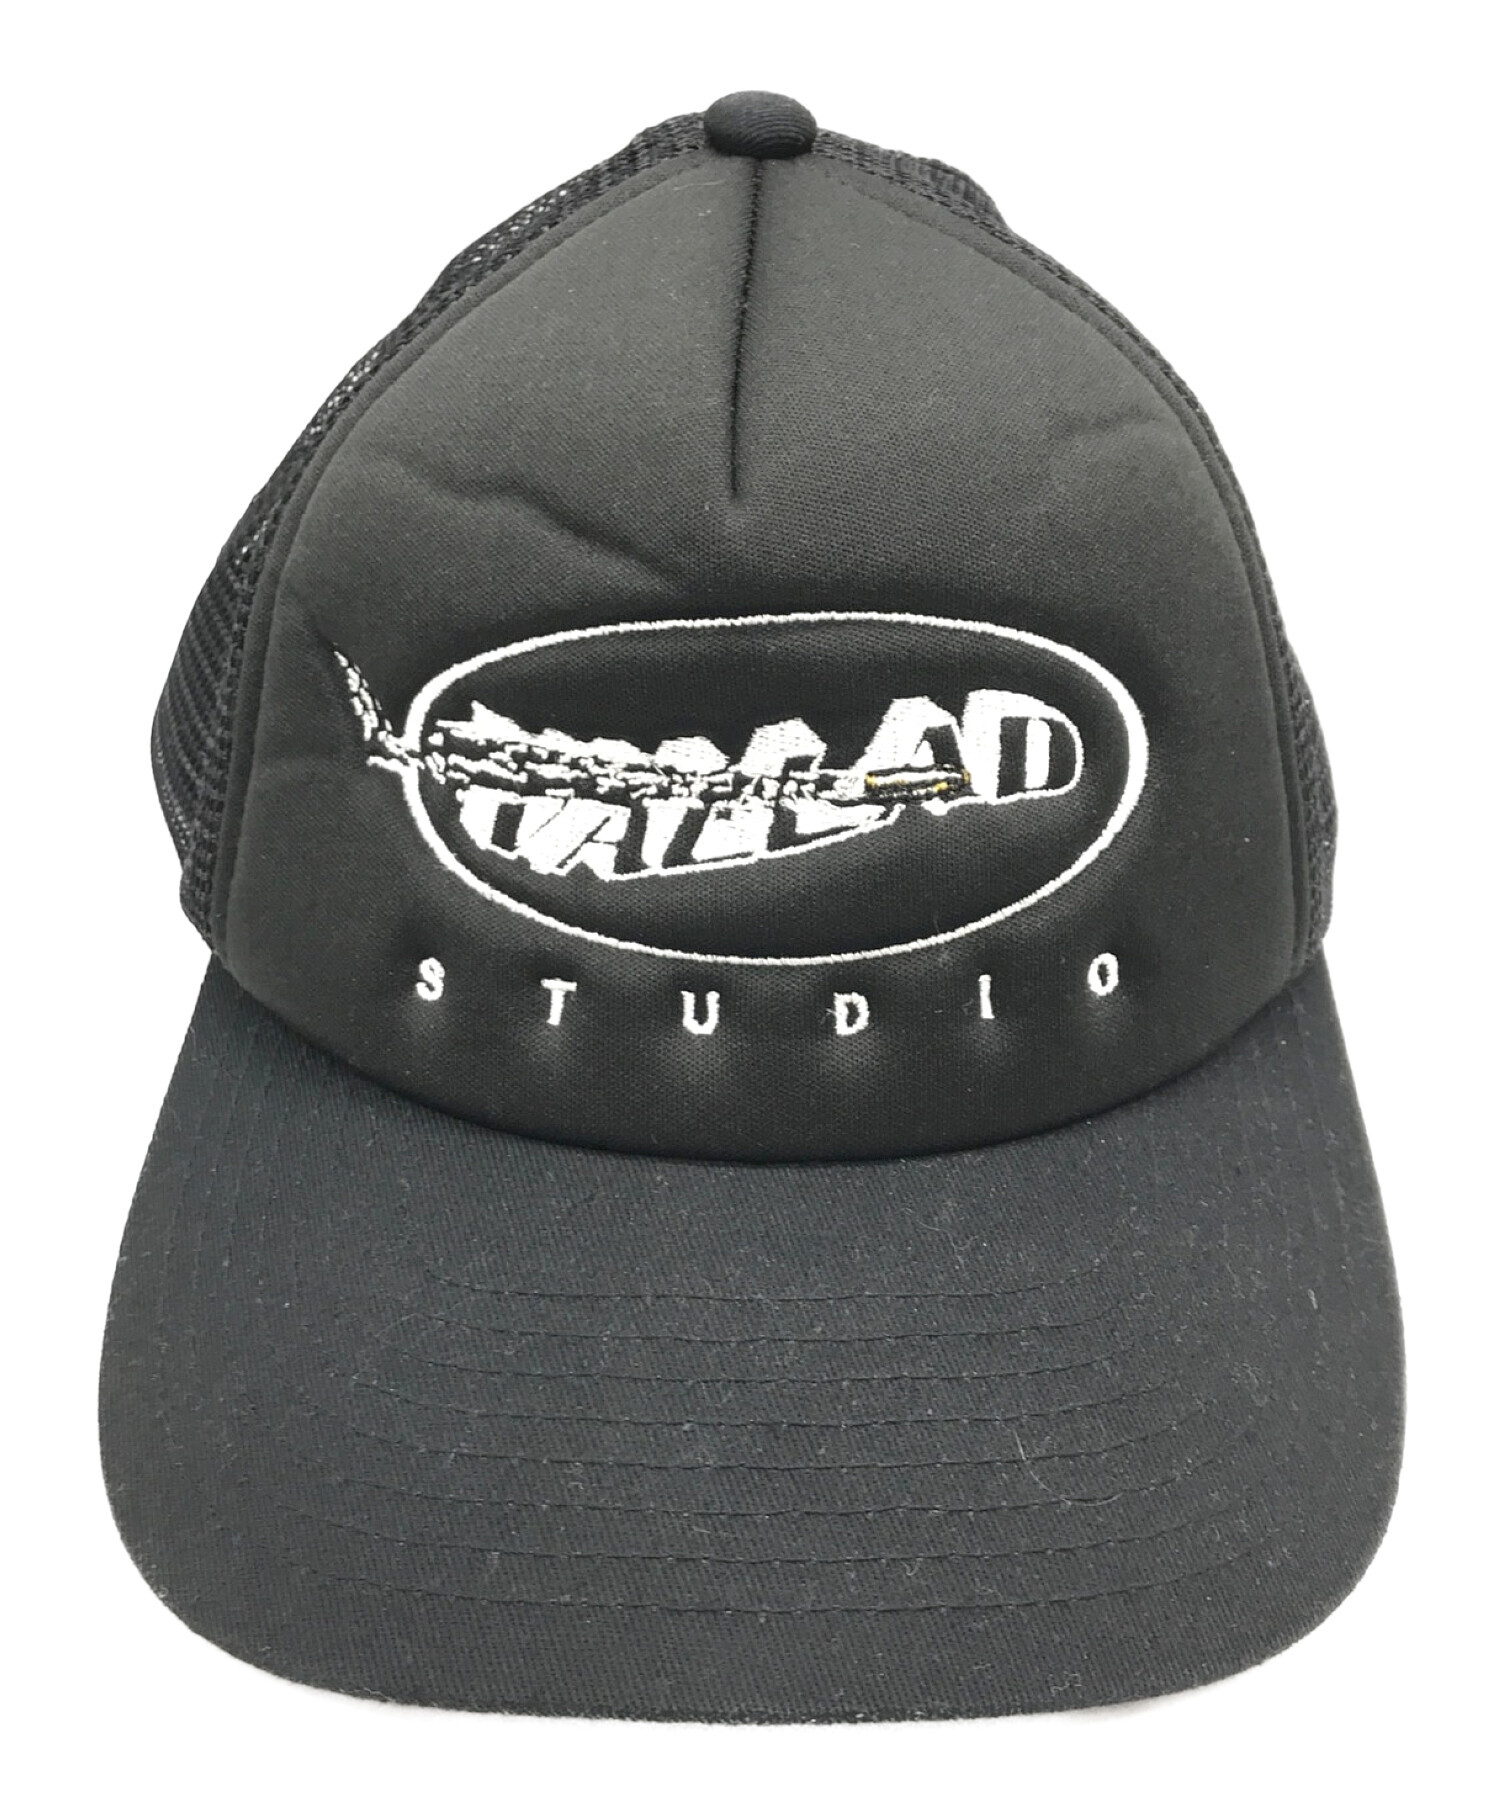 新製品の通販vallad studio キャップ - 帽子